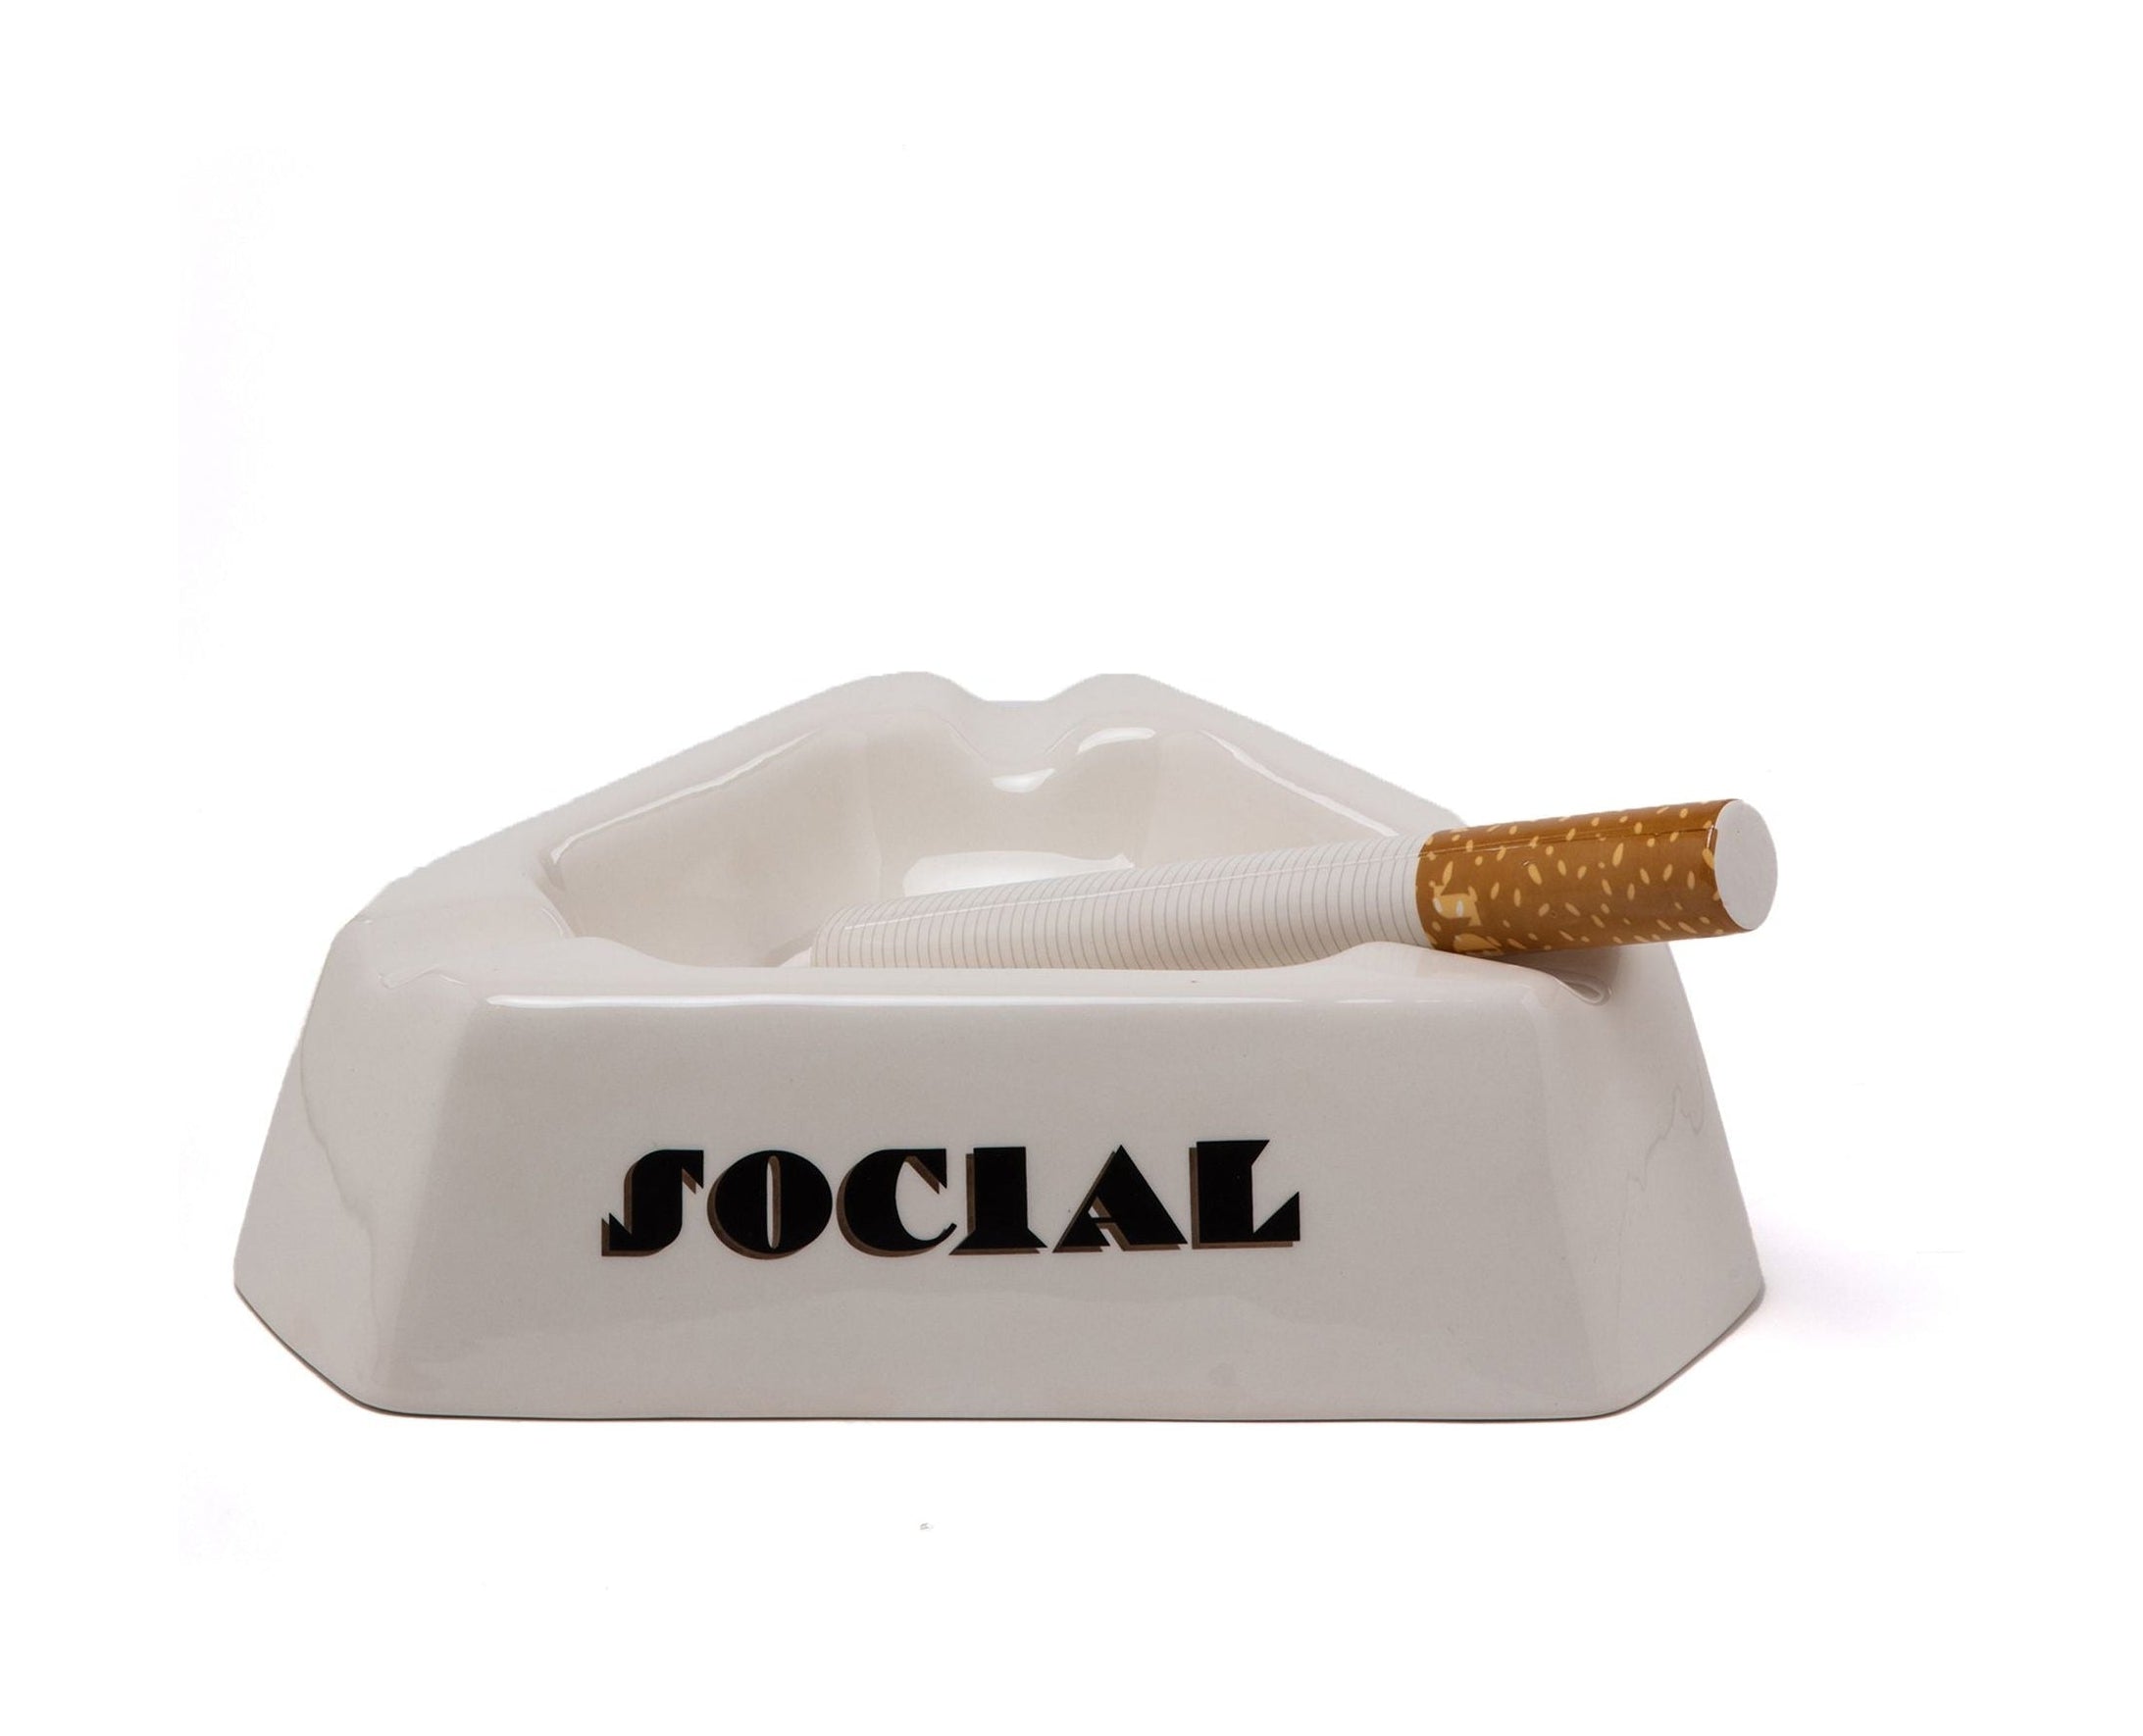 Seletti Social ryger midtpunkt